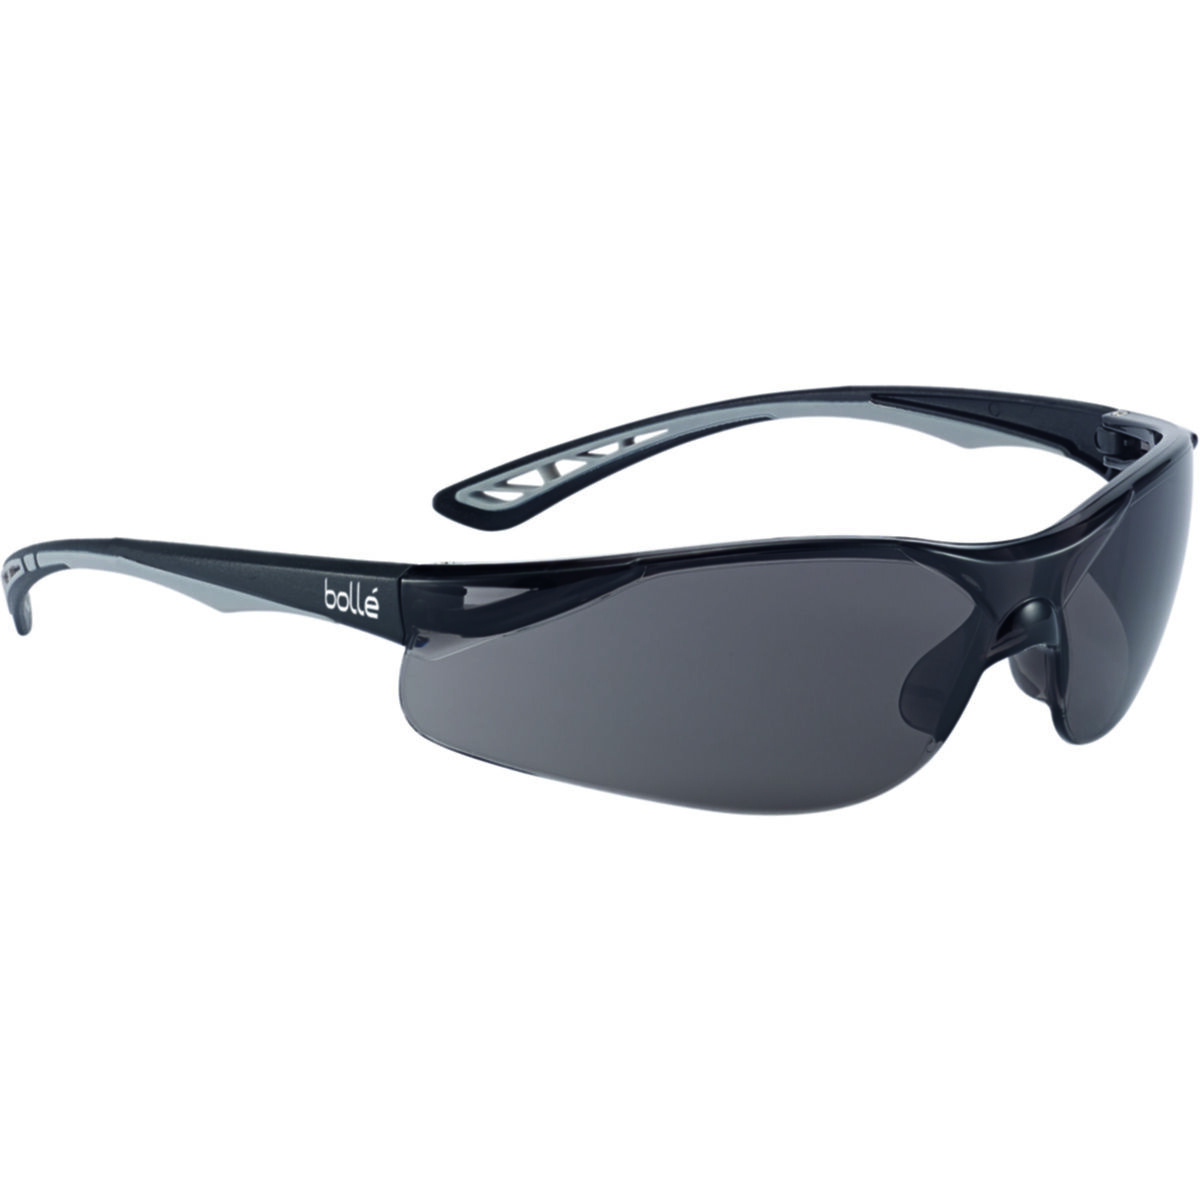 Bolle Prism Rauchglas Sicherheit Sonnenbrille mit Gratis Neckcord zu Halten 